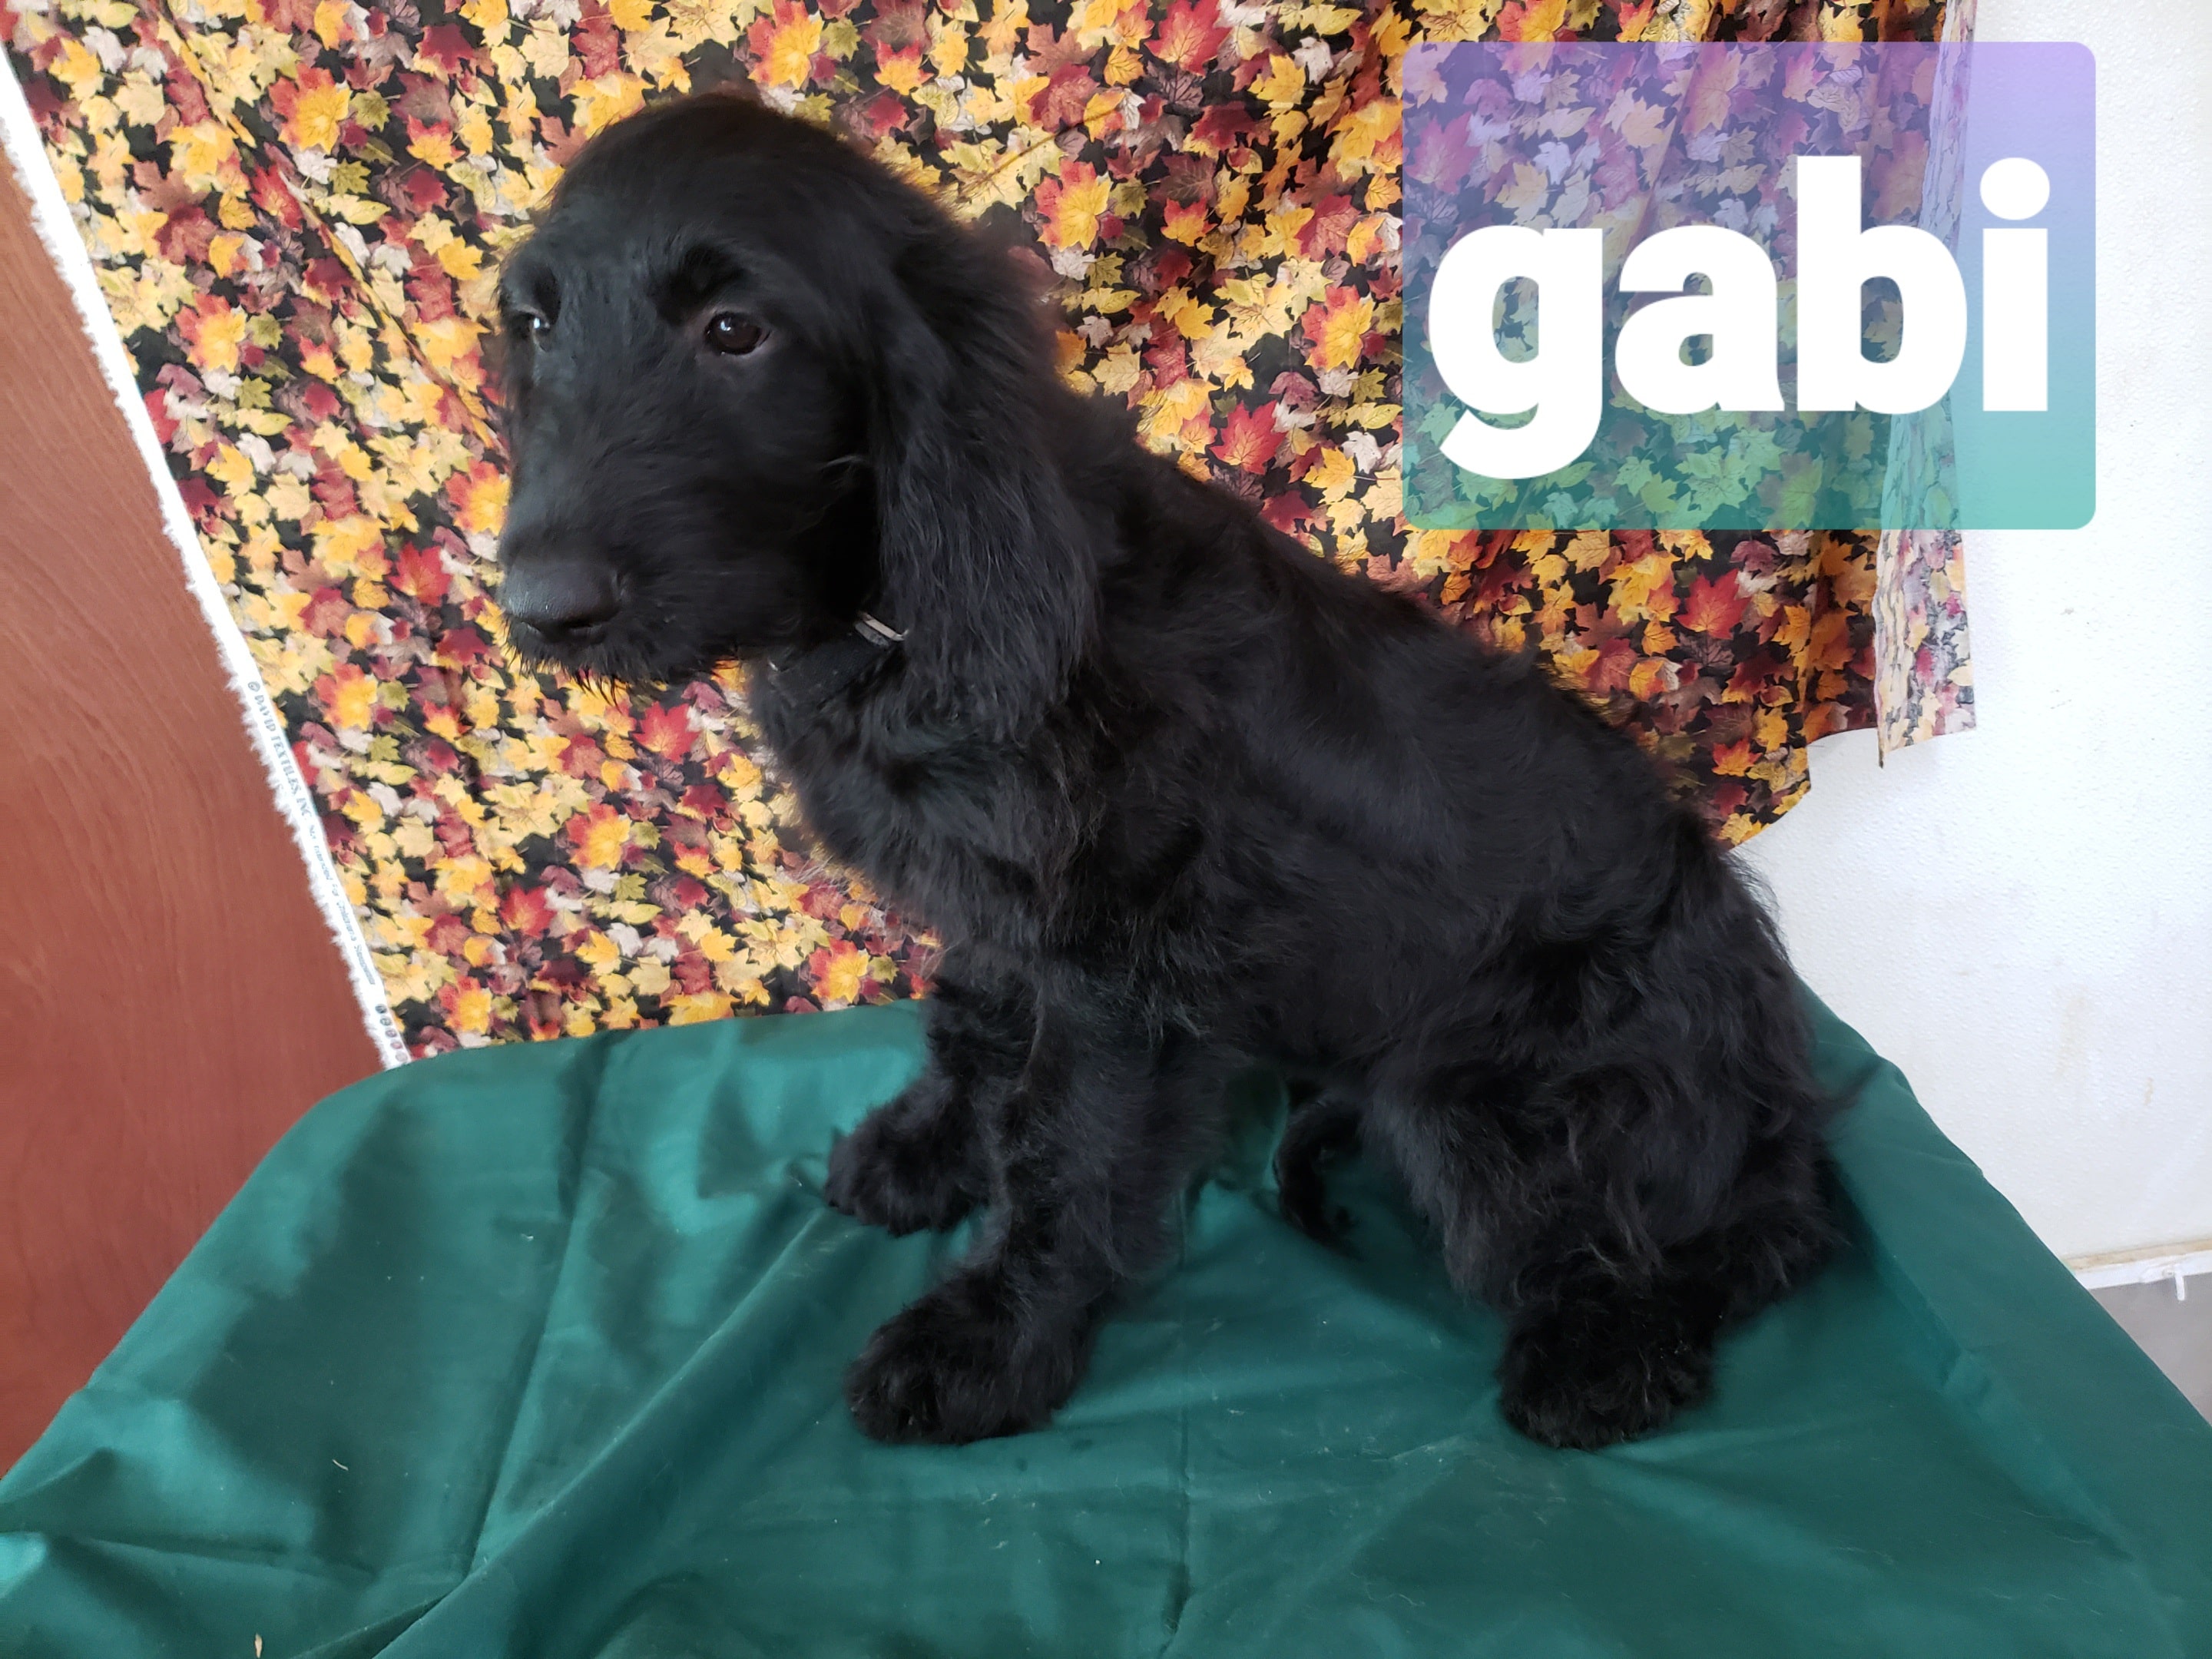 Gabi the Black Goldendoodle